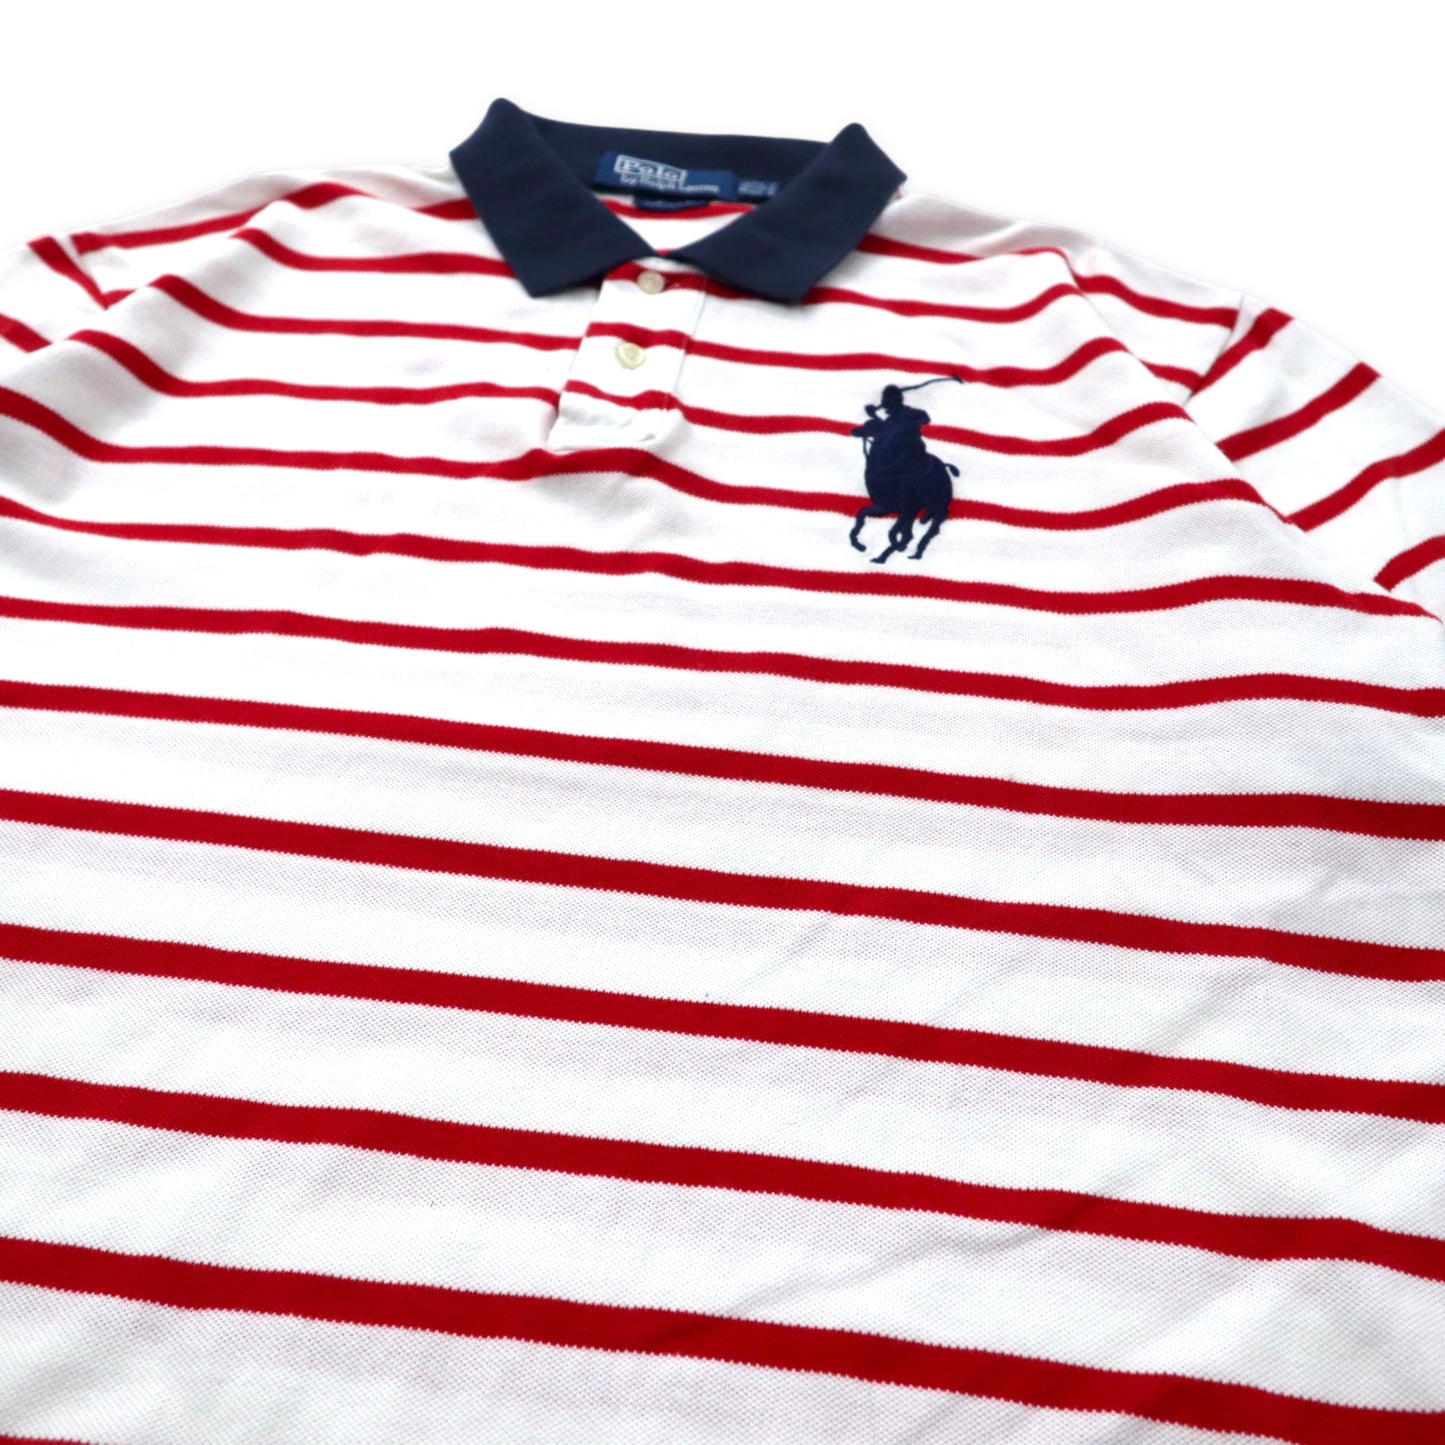 Polo by Ralph Lauren ビッグポニー ポロシャツ XXL レッド ホワイト ボーダー コットン CUSTOM FIT ビッグサイズ